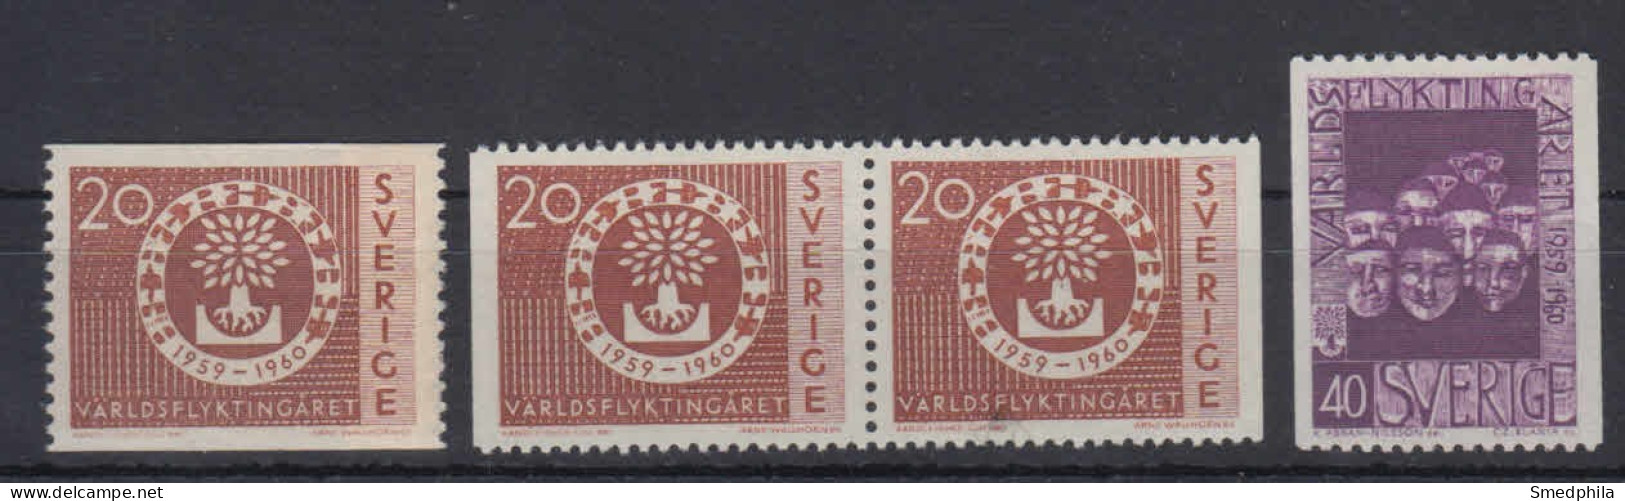 Sweden 1960 - Michel 457-458 MNH ** - Nuevos